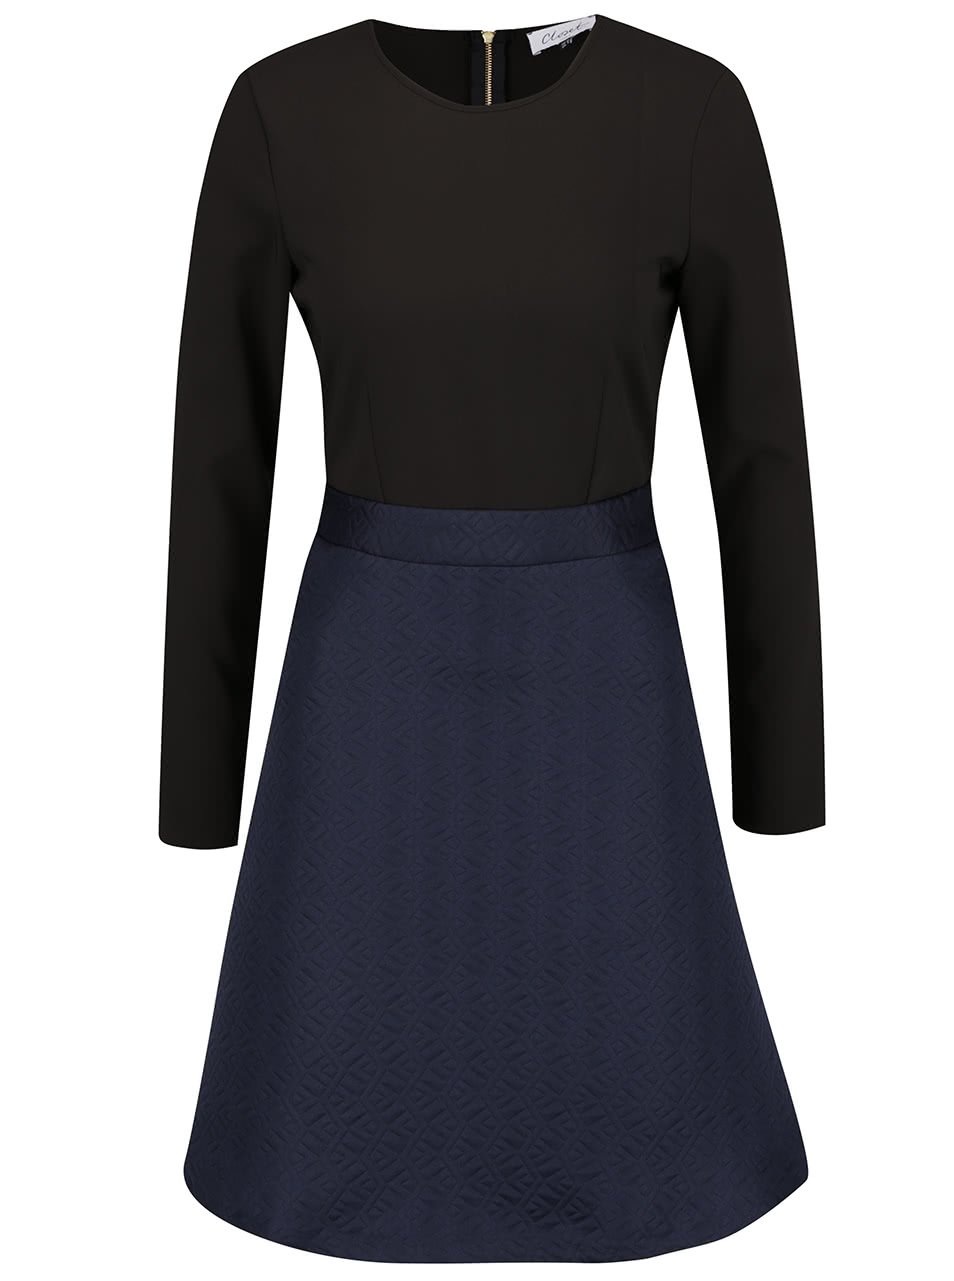 Černo-modré šaty s prošívaným vzorem Closet